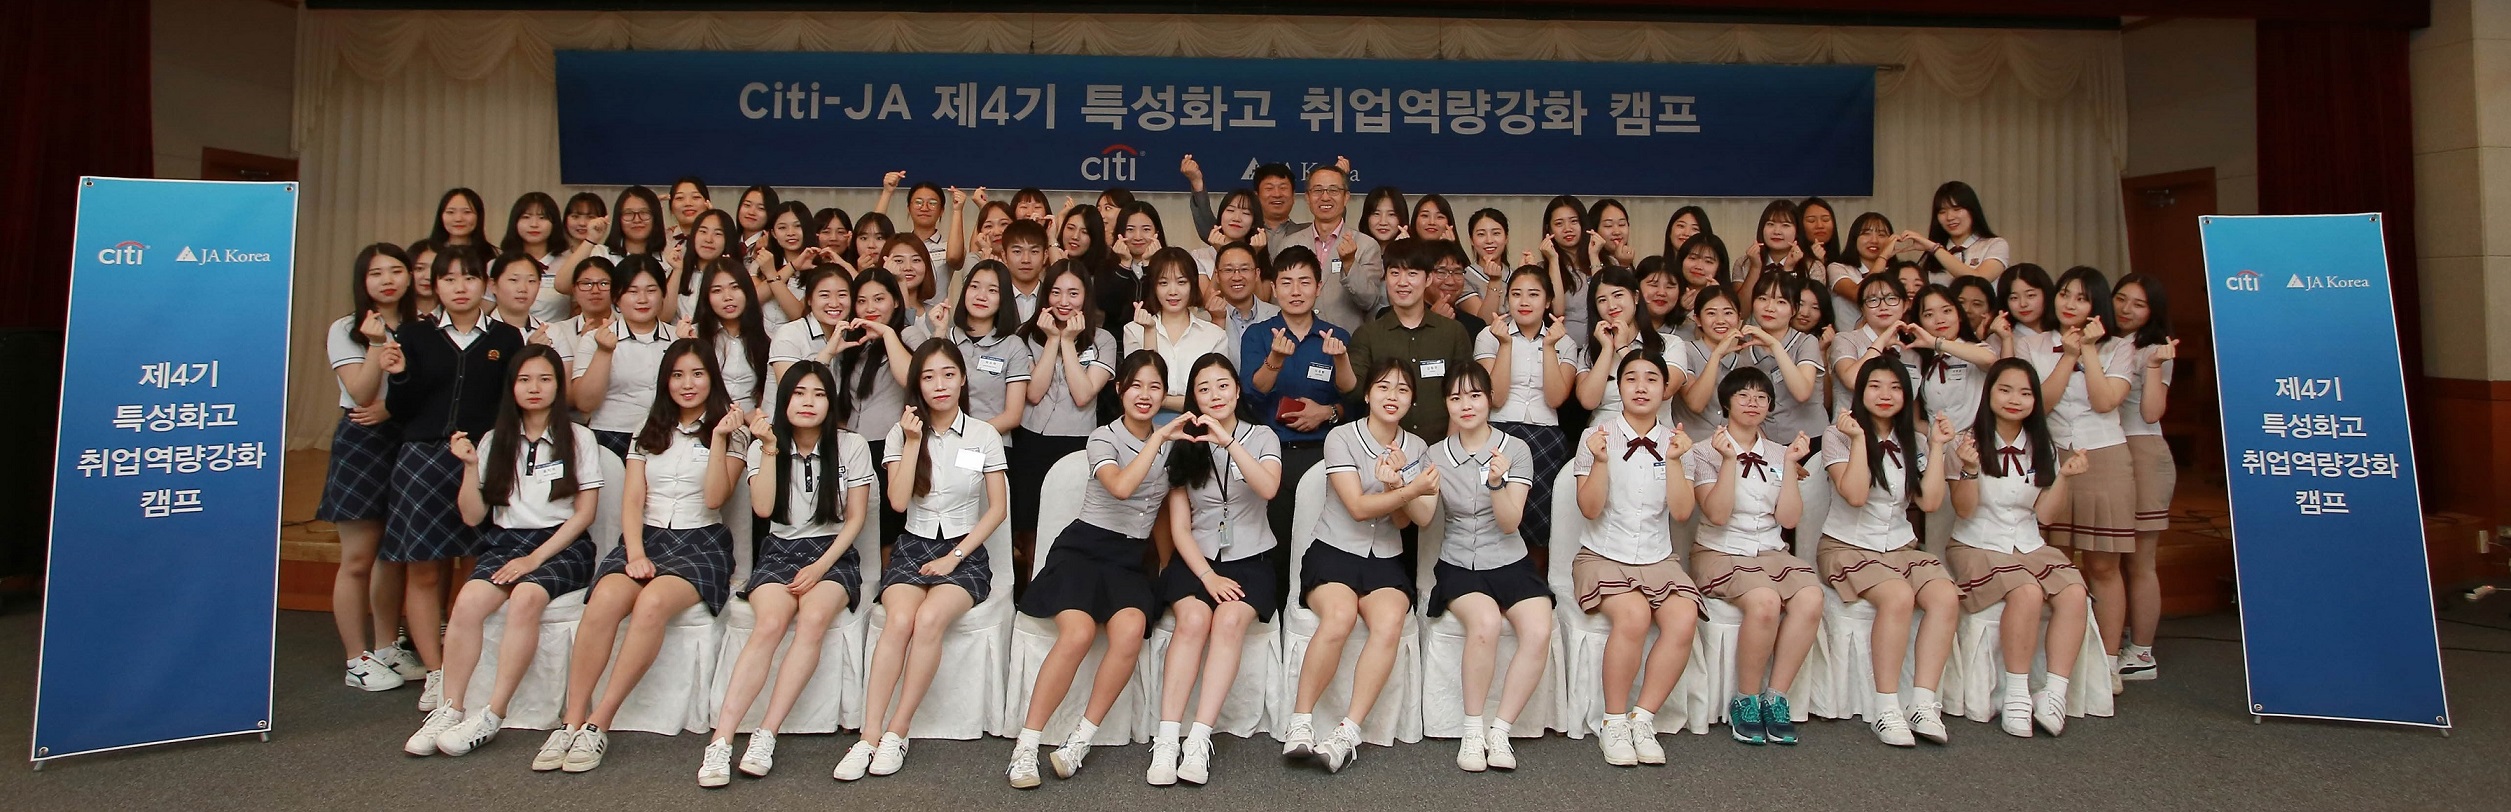 한국씨티은행, ‘제 4기 씨티-JA 취업역랑강화캠프’ 개최